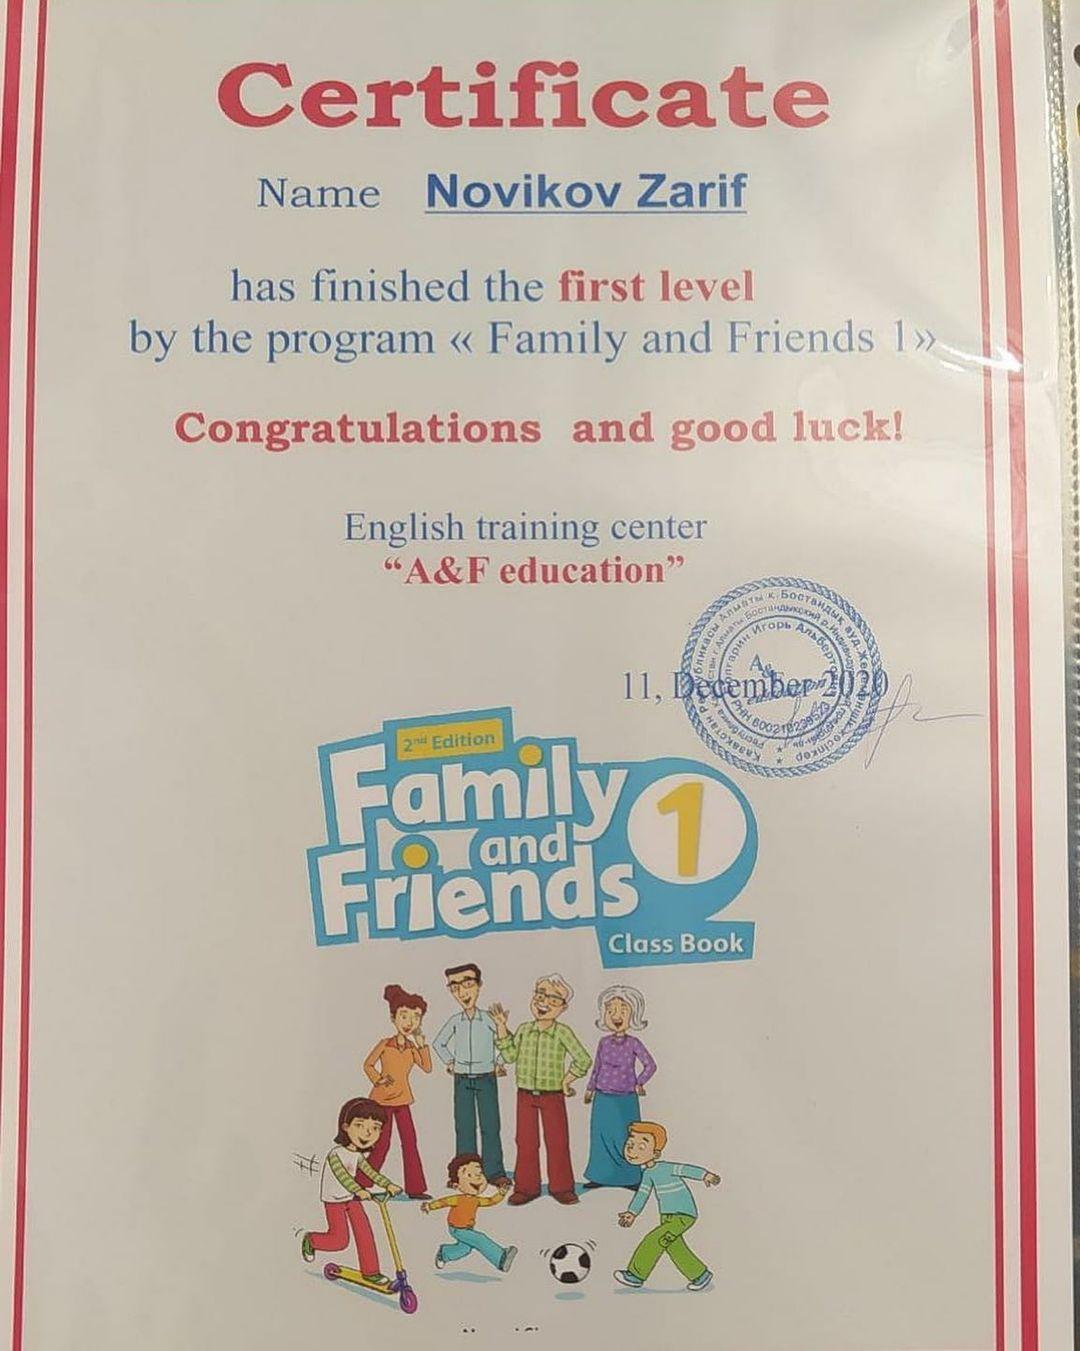 Новиков Зариф, 2 «В» класс на каникулах изучает новые уровни английского языка!